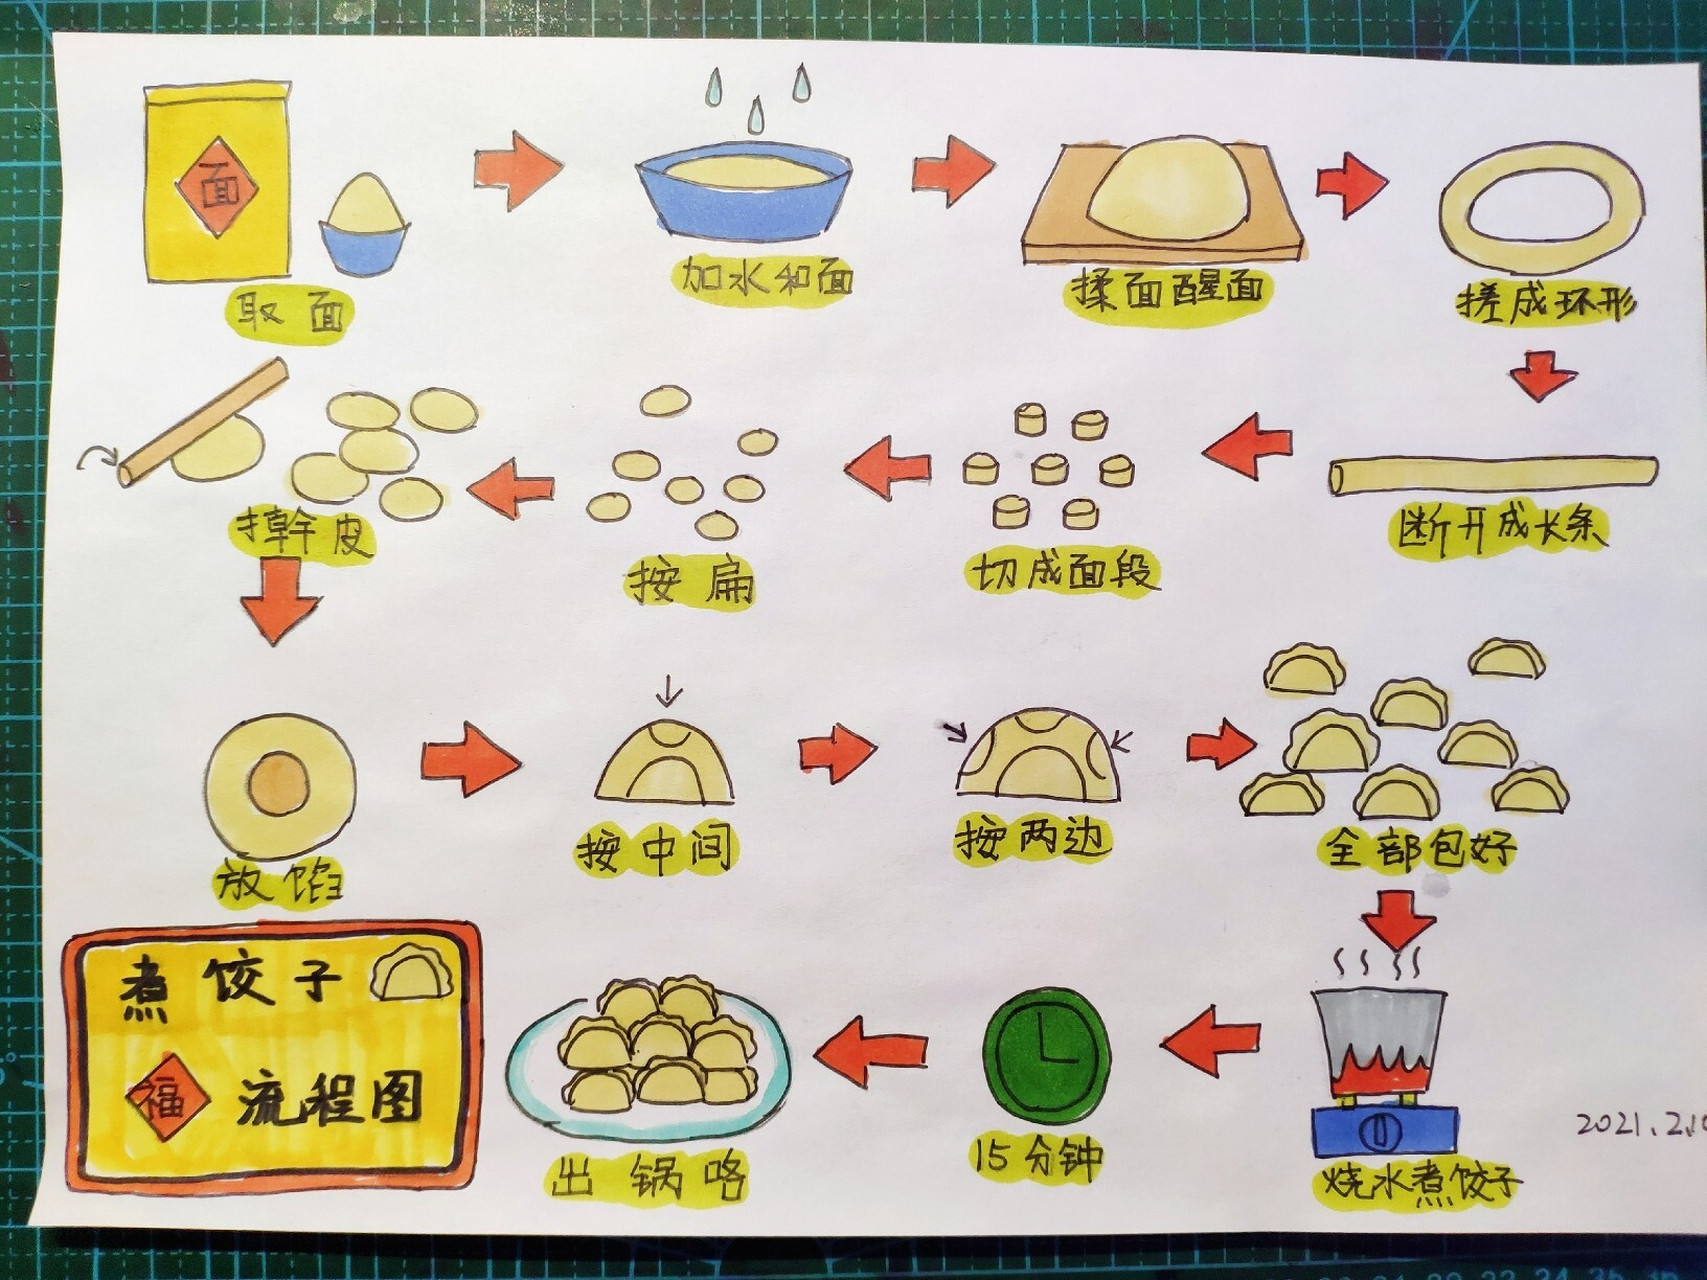 新年儿童画《包饺子流程图》 让孩子学会包饺子,熟悉新年的事物